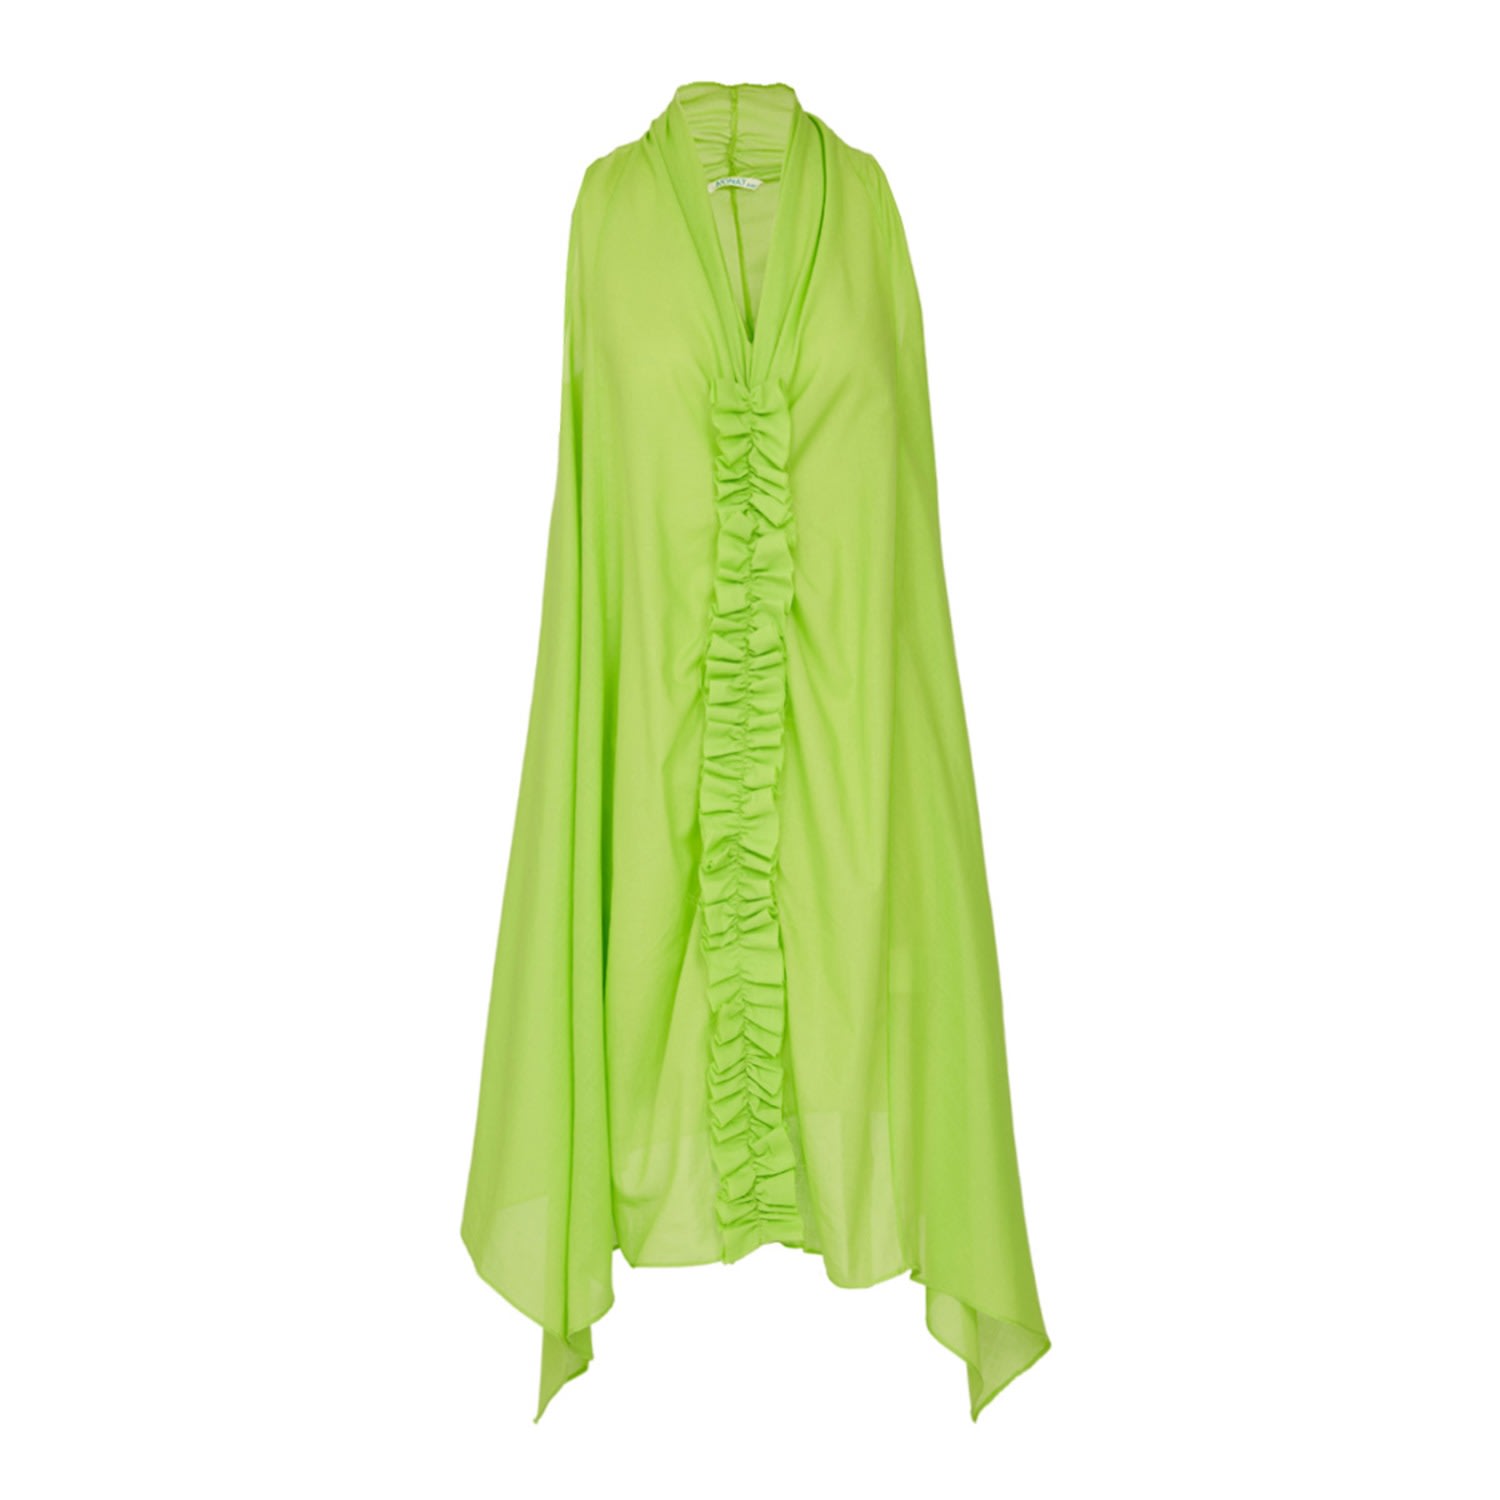 N'onat Women's Cozy Organic Cotton Dress With Ruffles In Green